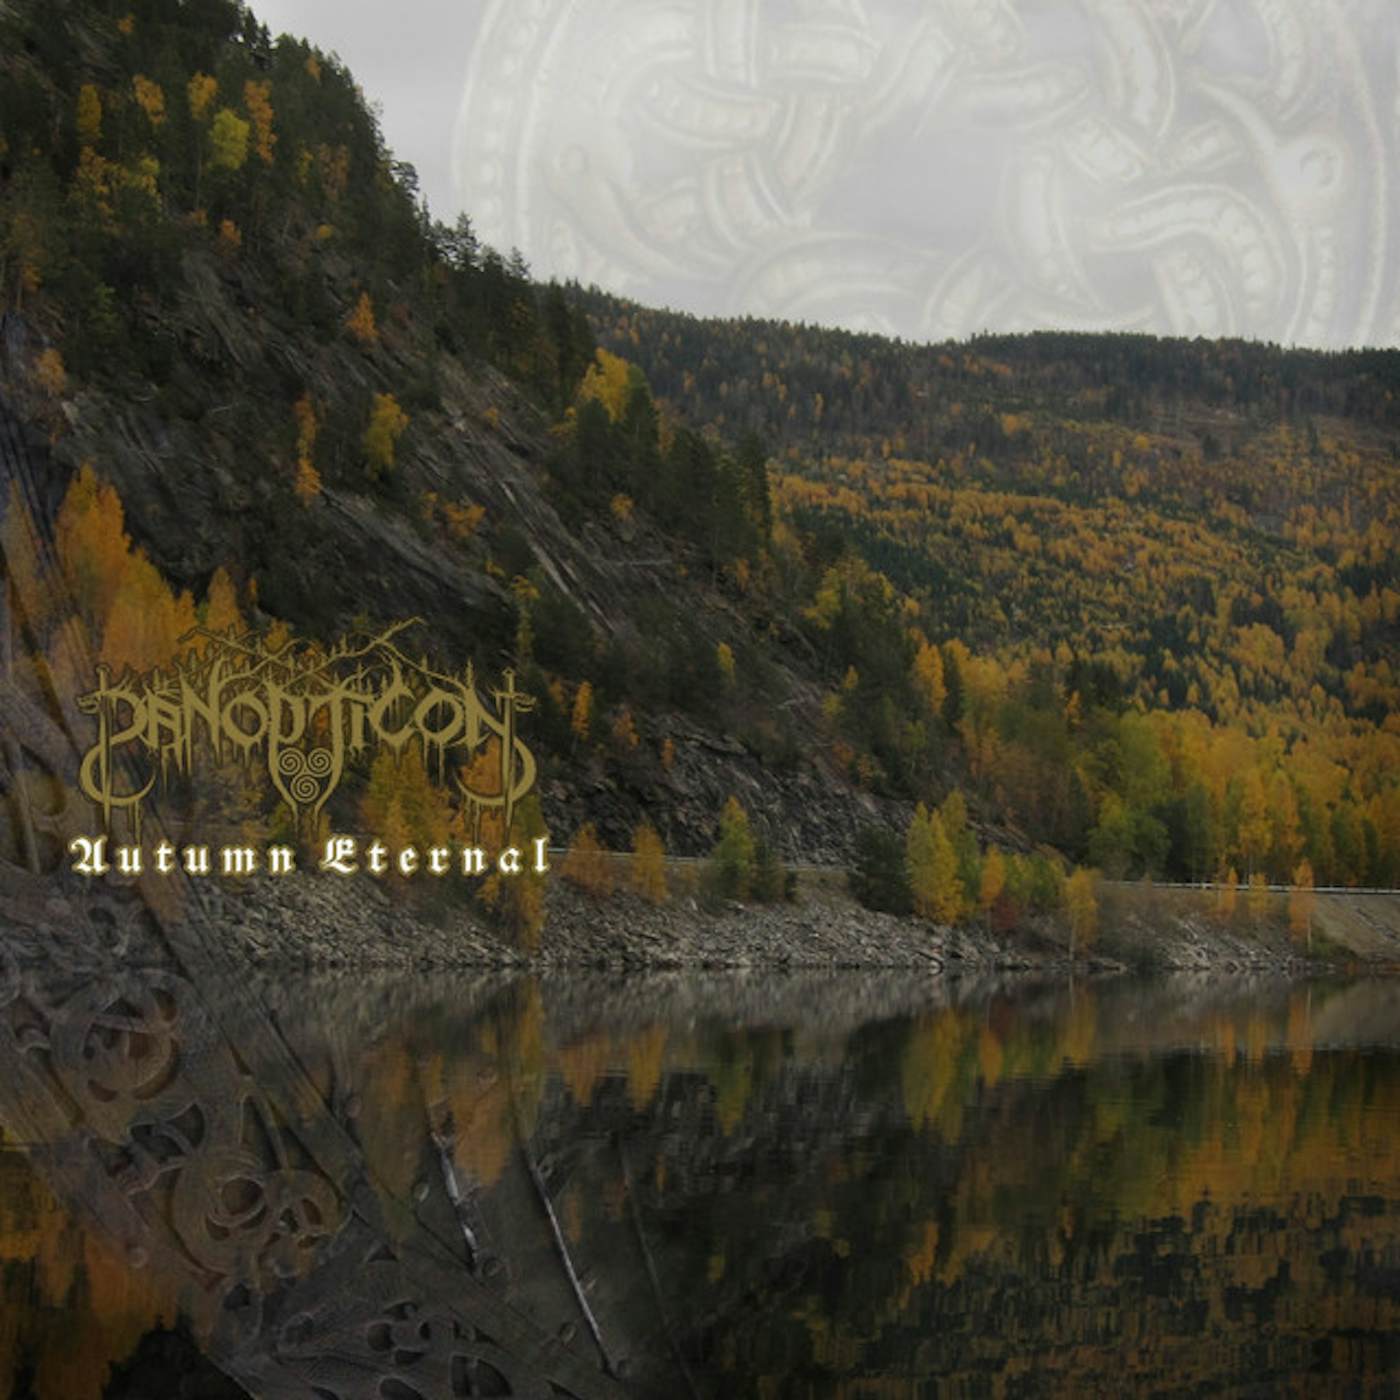 Panopticon Autumn Eternal Vinyl Record